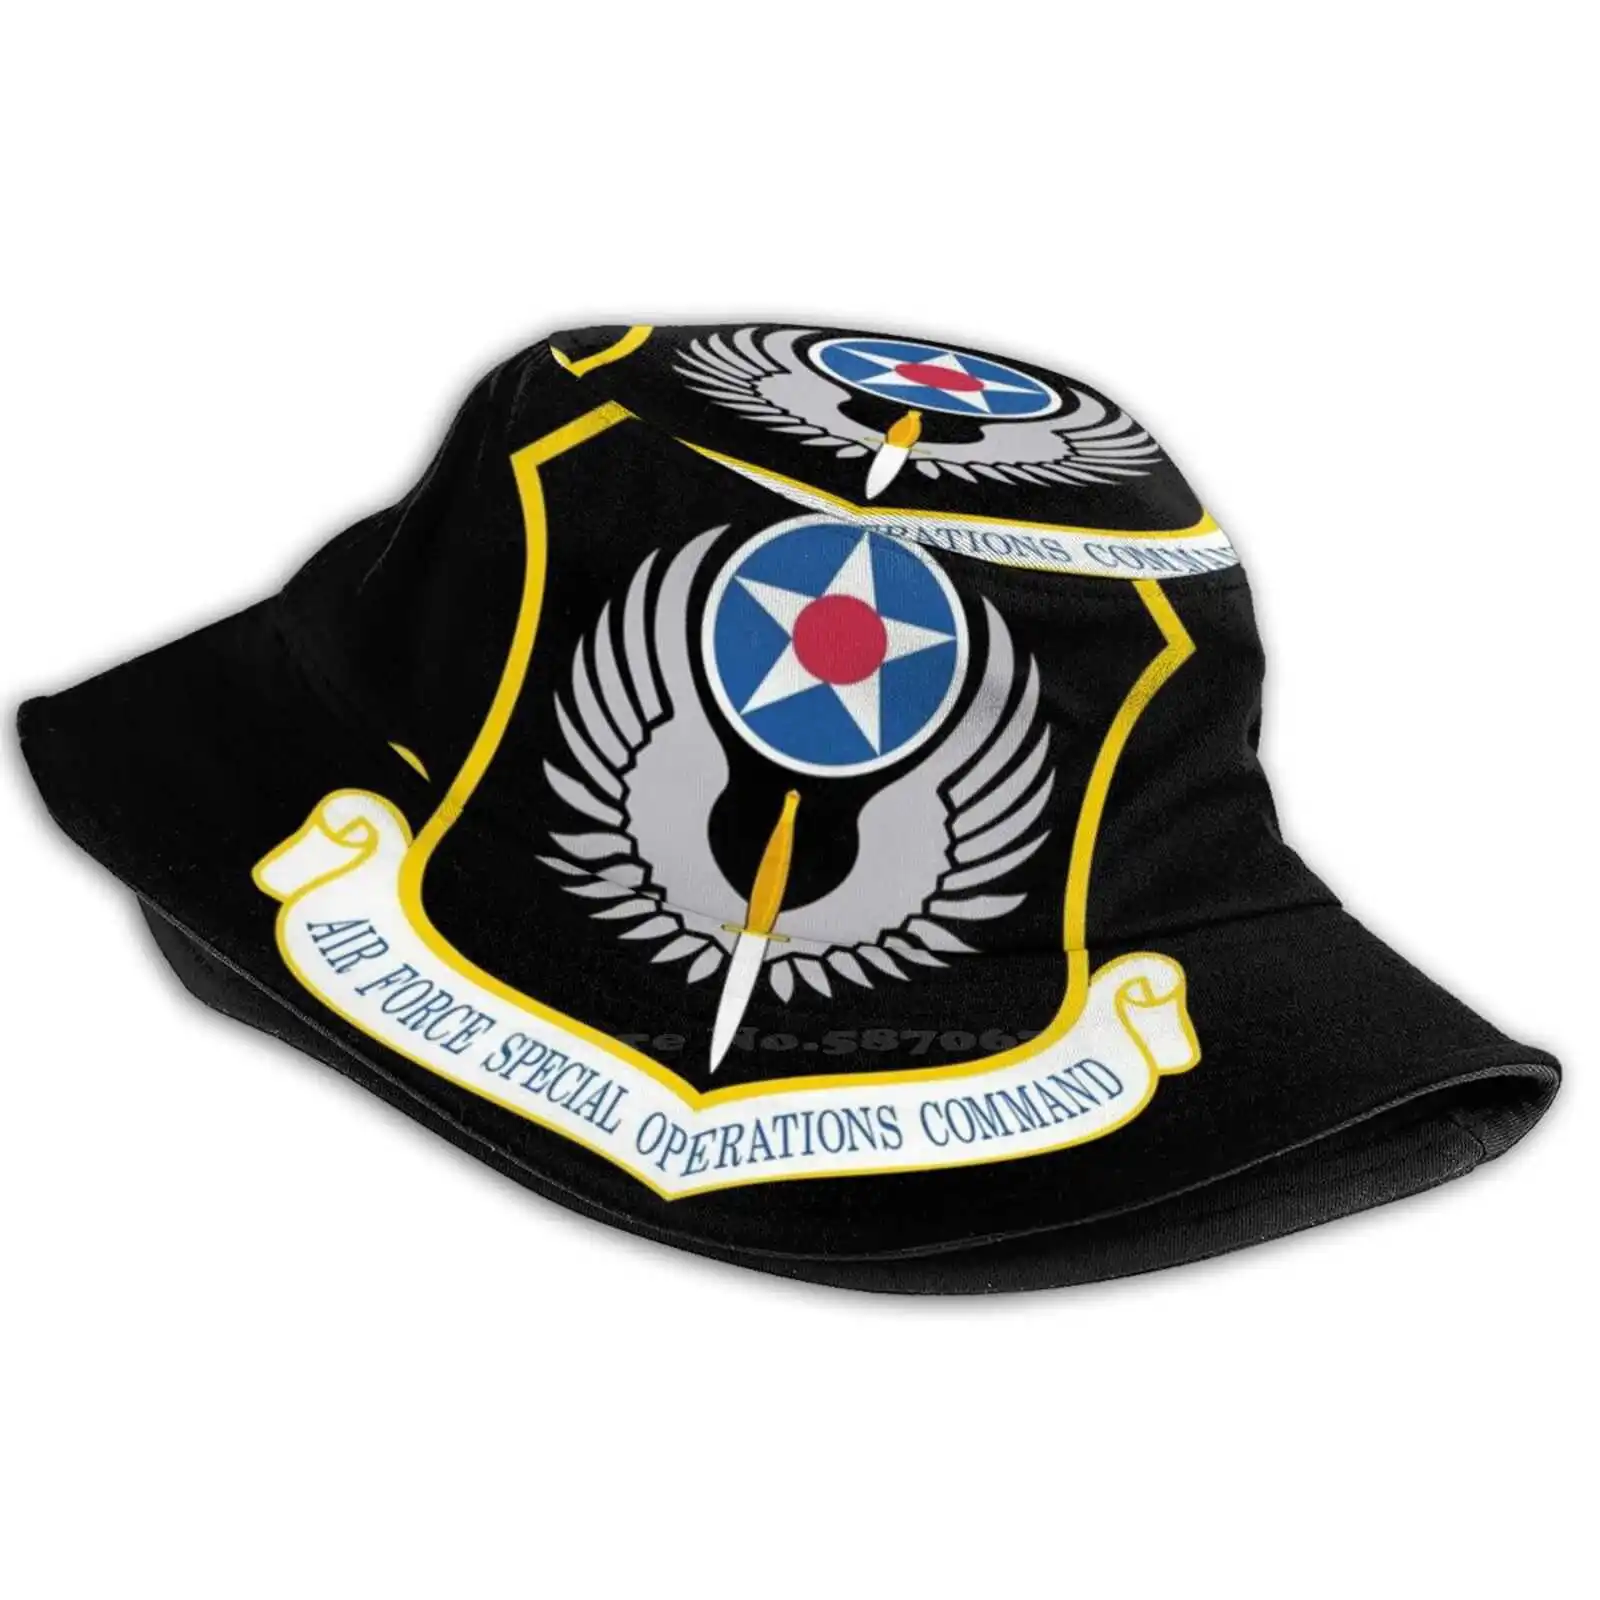 Hava Kuvvetleri Özel Harekat Komutanlığı Usaf Nedensel Kap Kova Şapka Hava Kuvvetleri Usaf Özel Harekat Komutanlığı Özel Kuvvetler